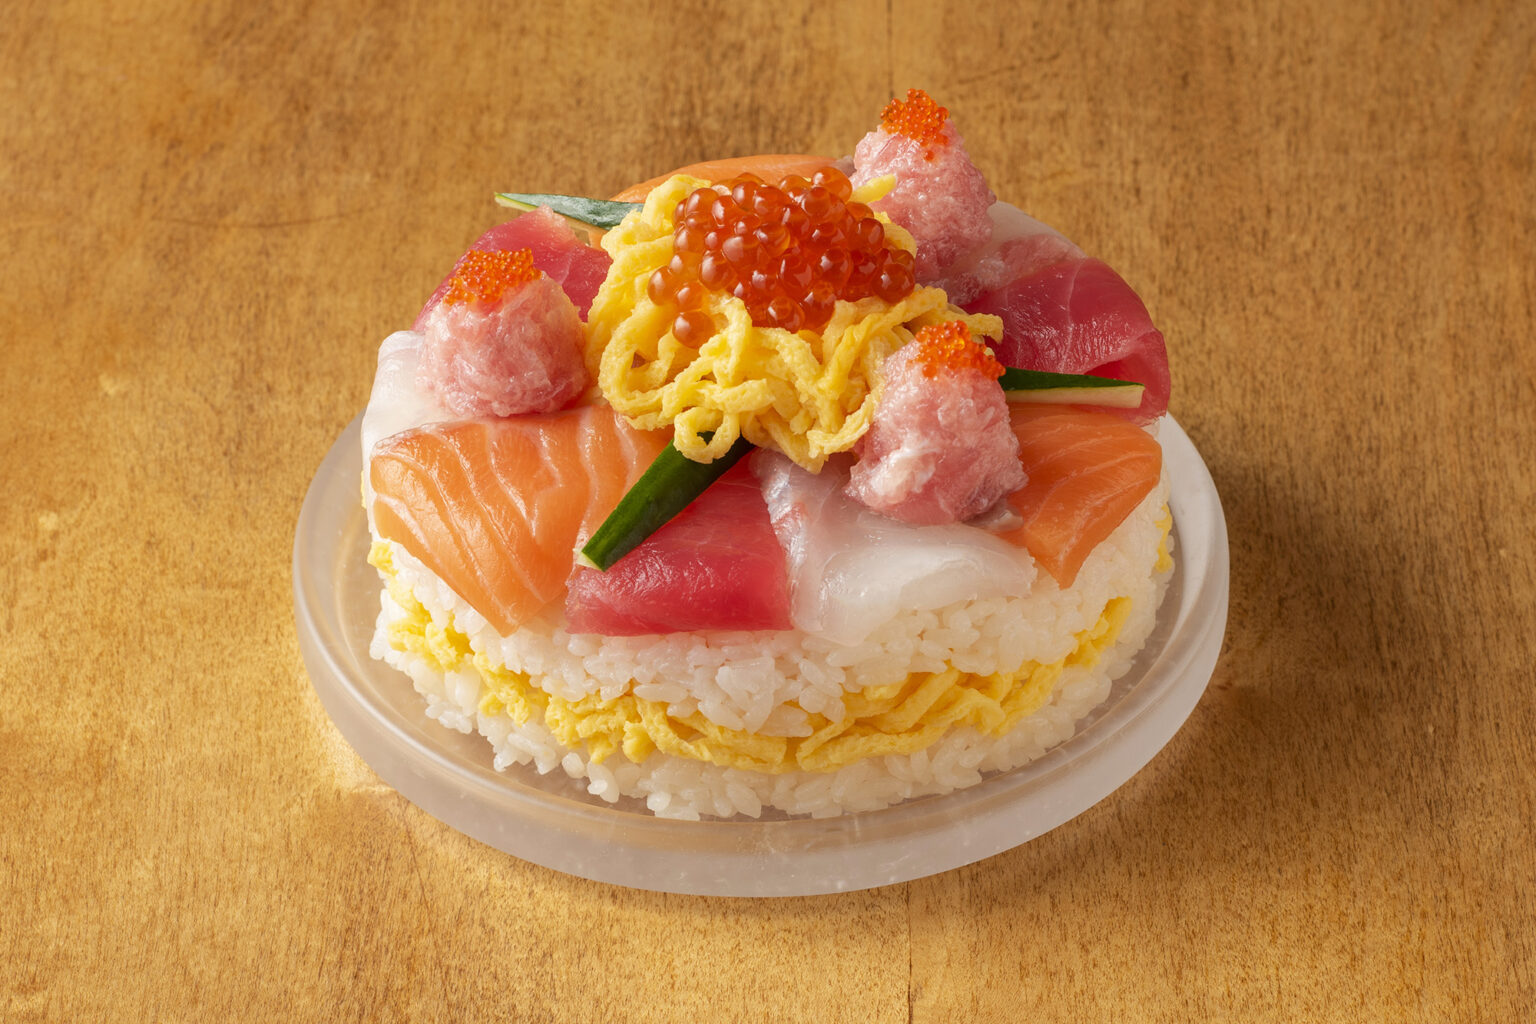 魚力海鮮寿司「クリスマスデコレーション寿司」。